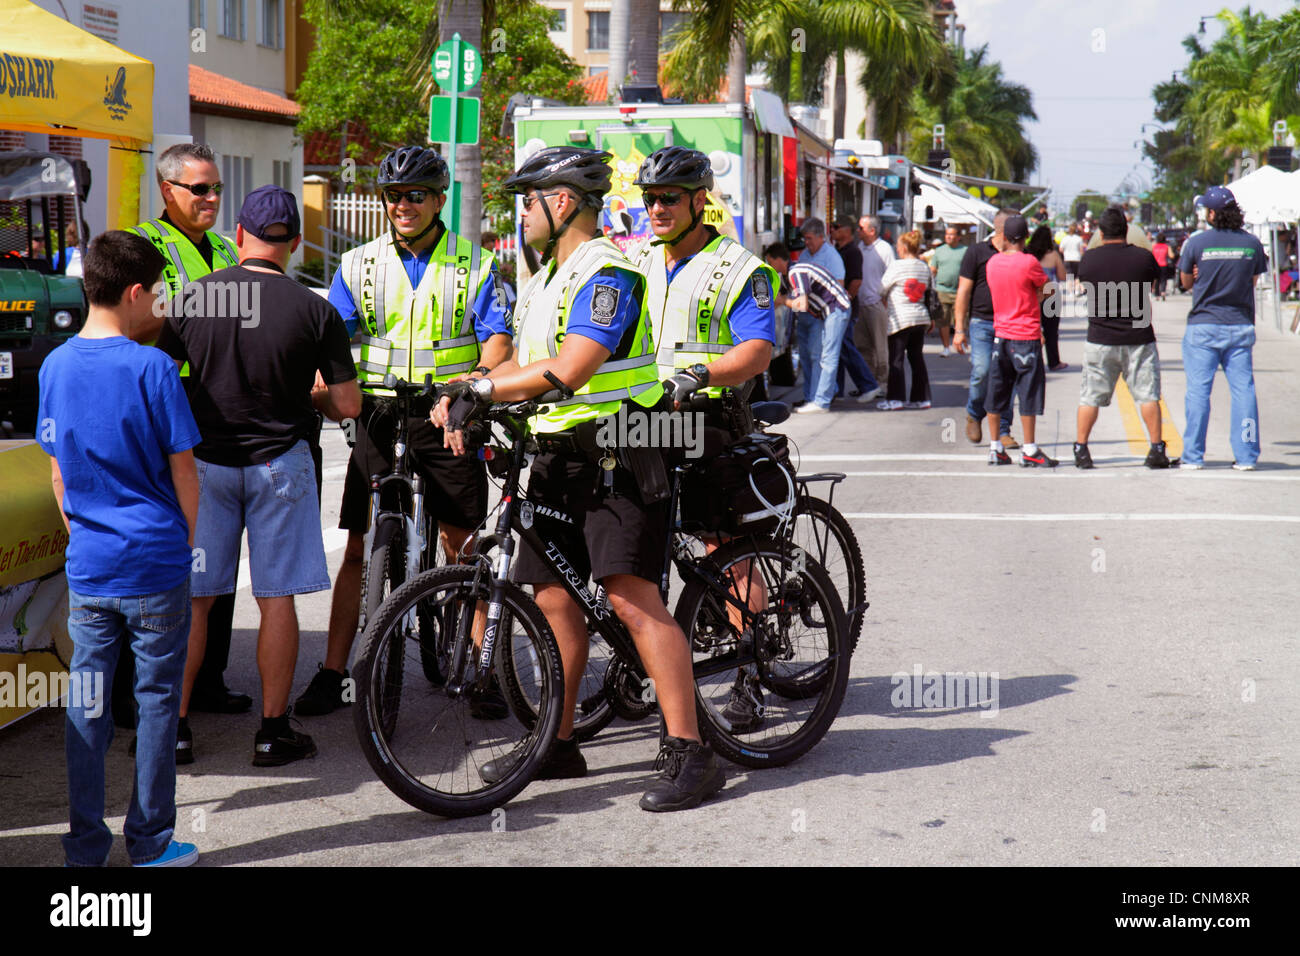 Miami Florida,Hialeah,Palm Avenue,Art on Palm,fiera,festival,pattuglia ciclistica,polizia,poliziotti,FL120311211 Foto Stock